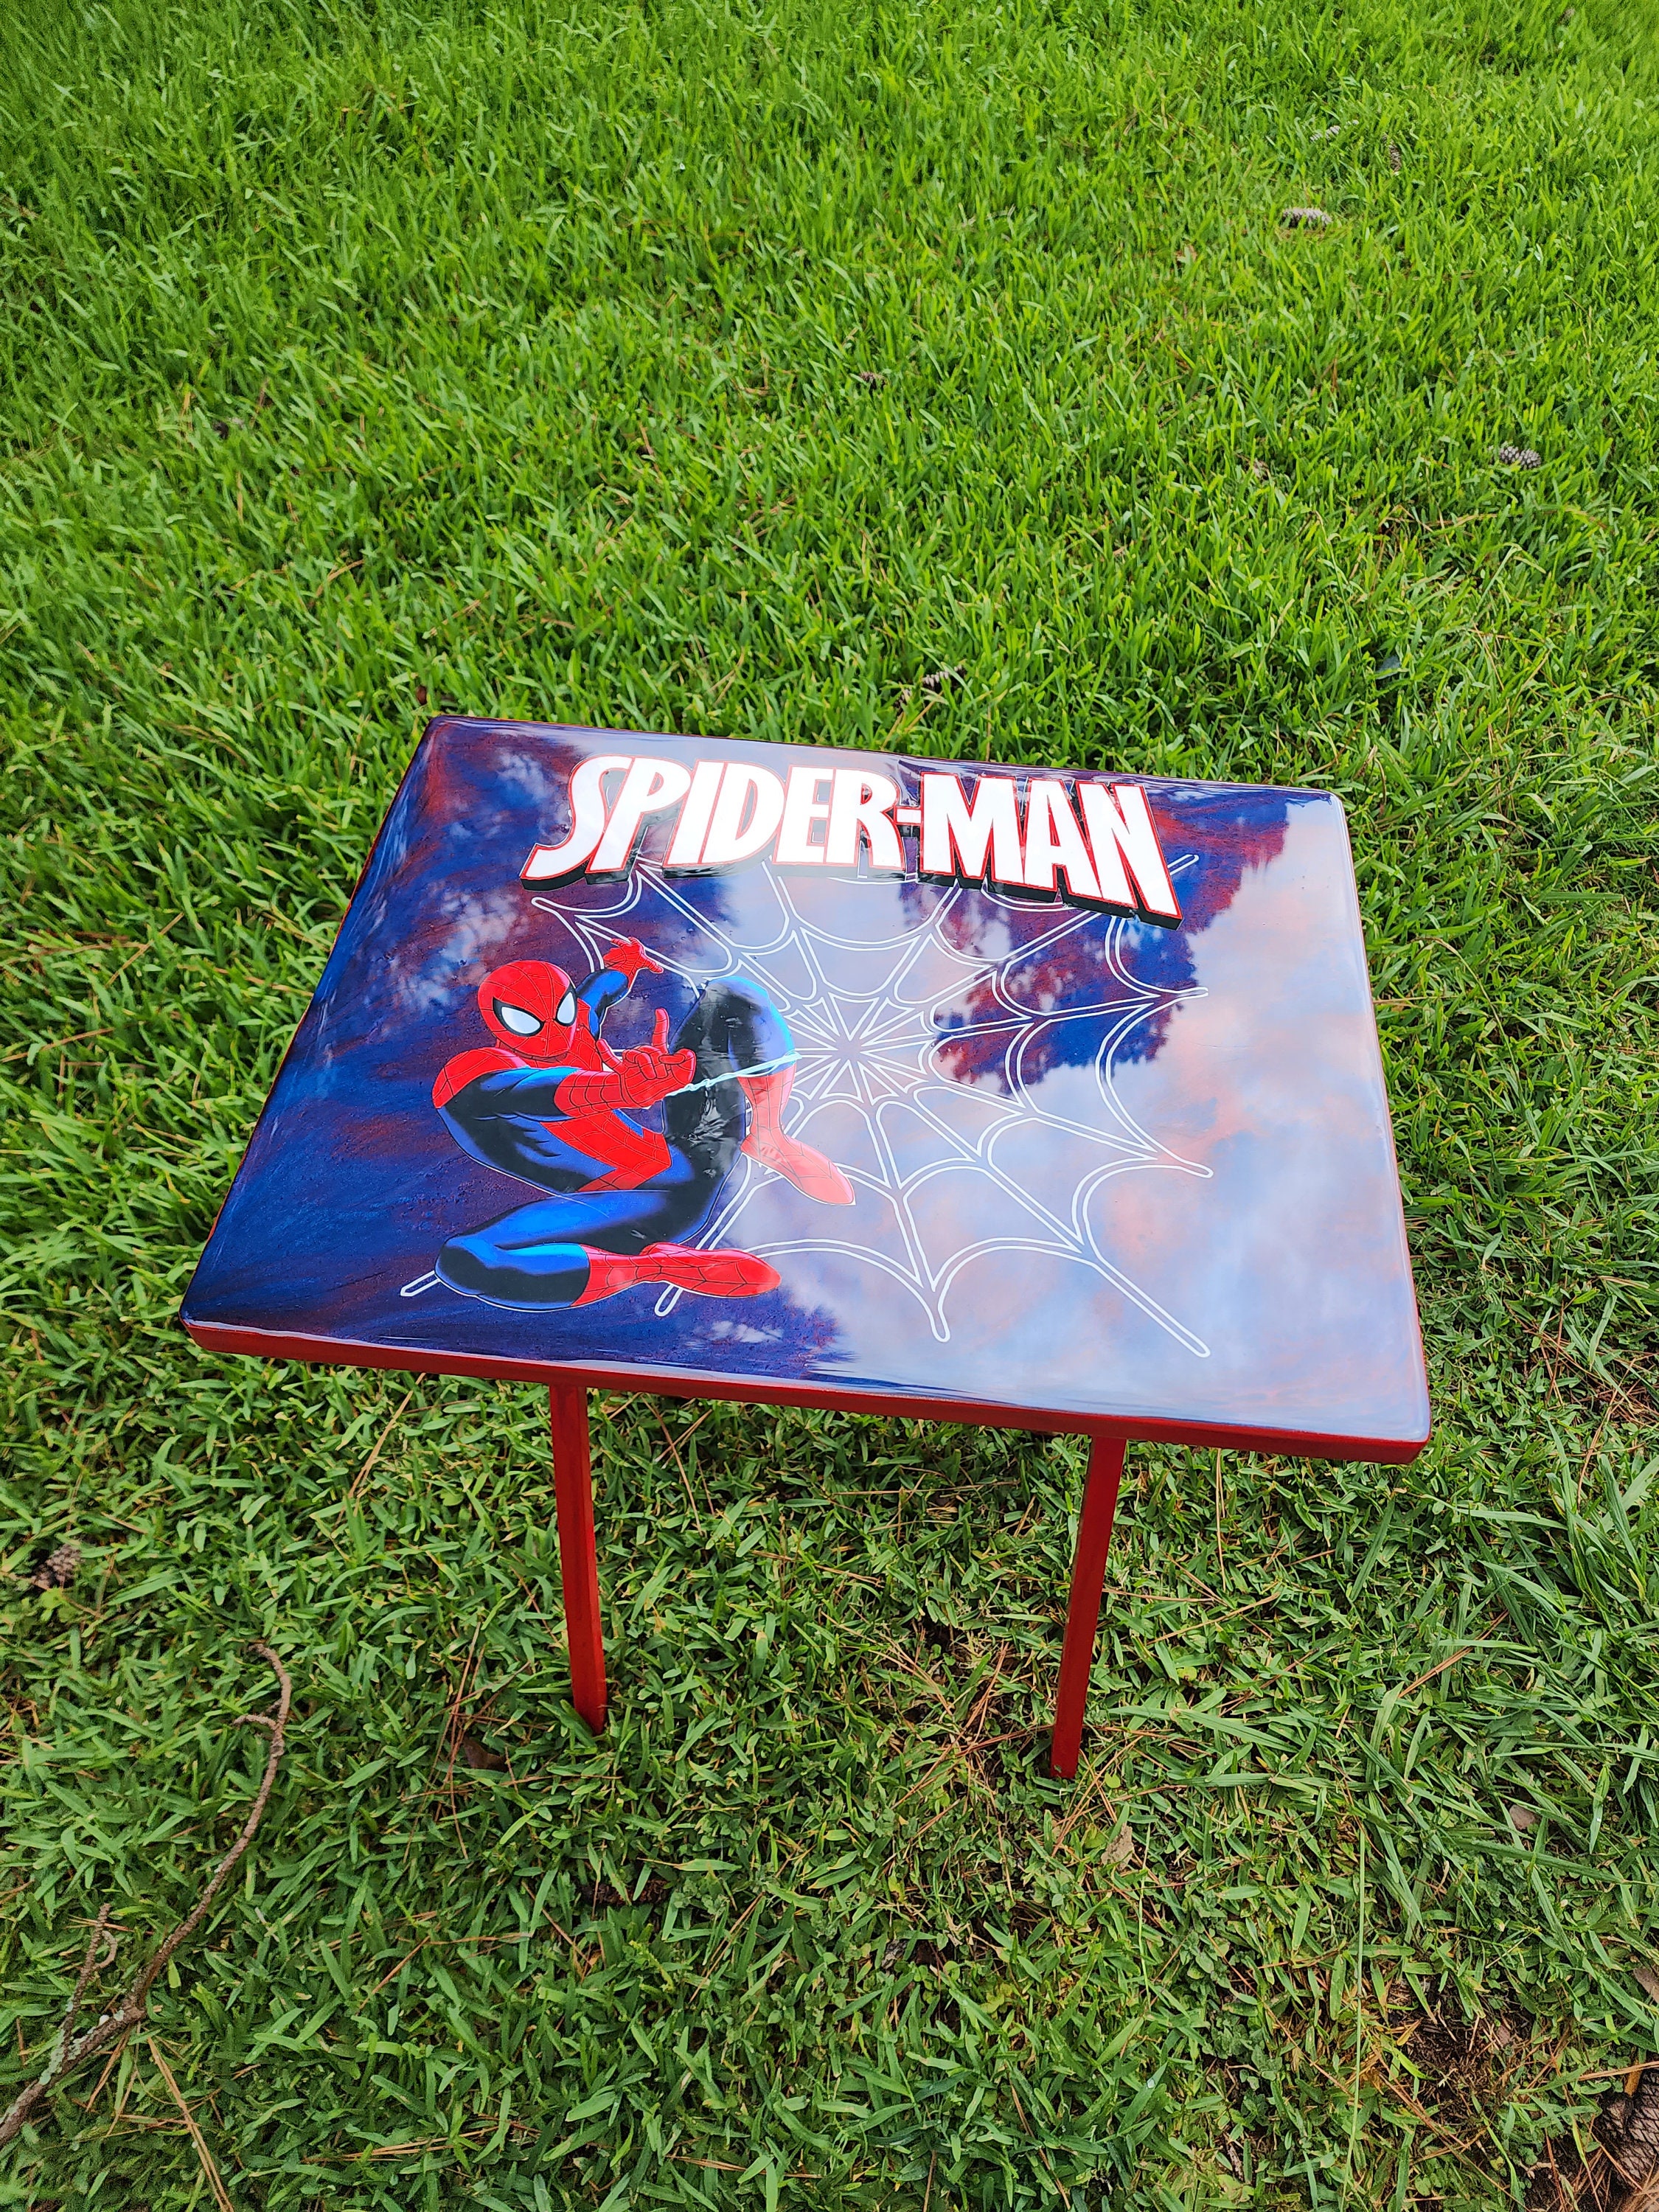 Spider-man Activity Tray, Spider Man Tray, Spider Man Tv Tray